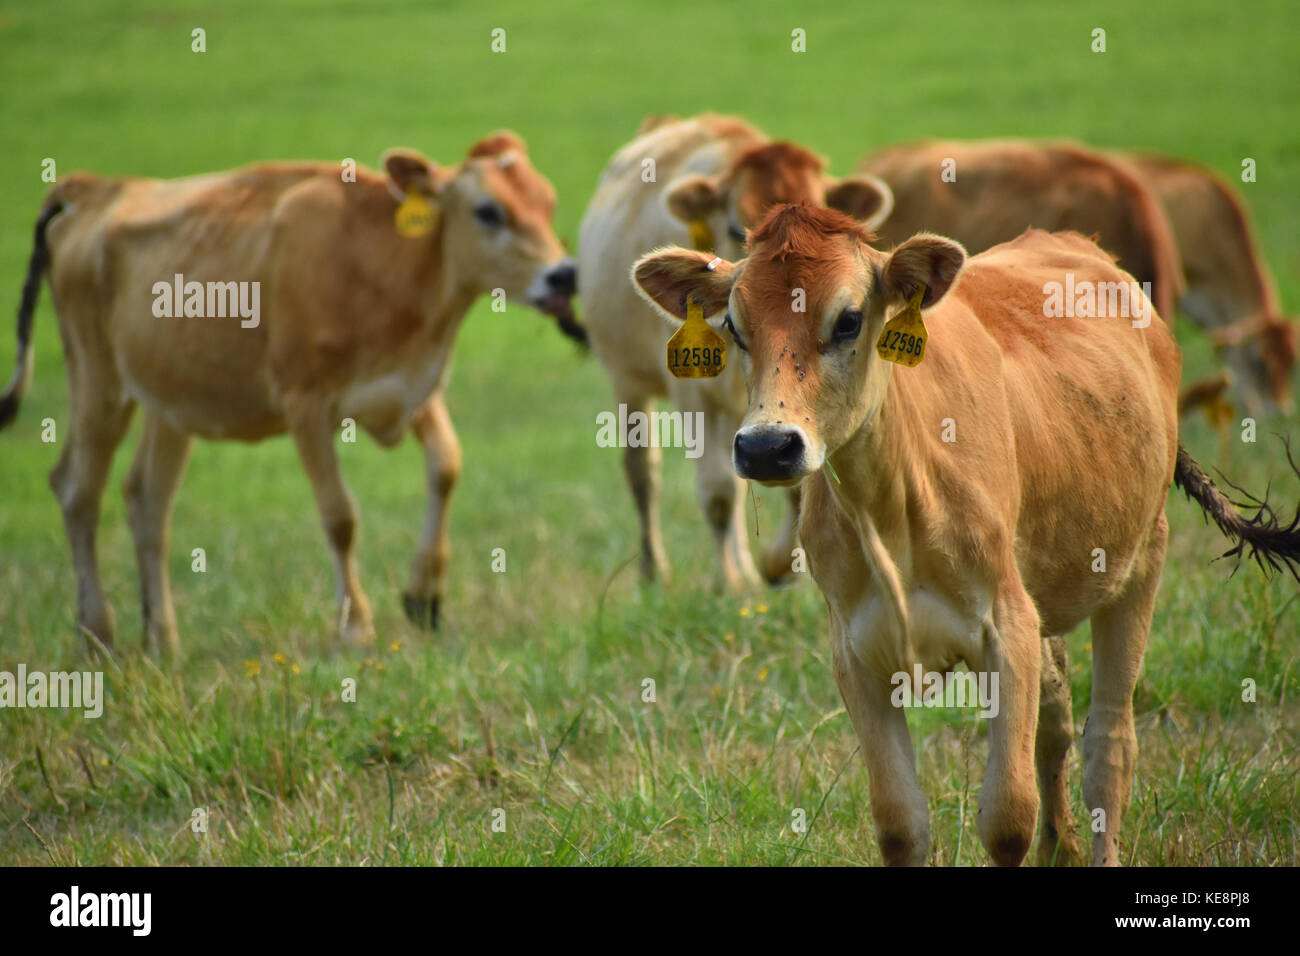 Kühe in einem Feld mit schönen grünen Rasen. Die Kühe Kennzeichnungen in Ihren Ohren haben. Einige der Kühe grasen auf dem grünen Rasen sind. Stockfoto